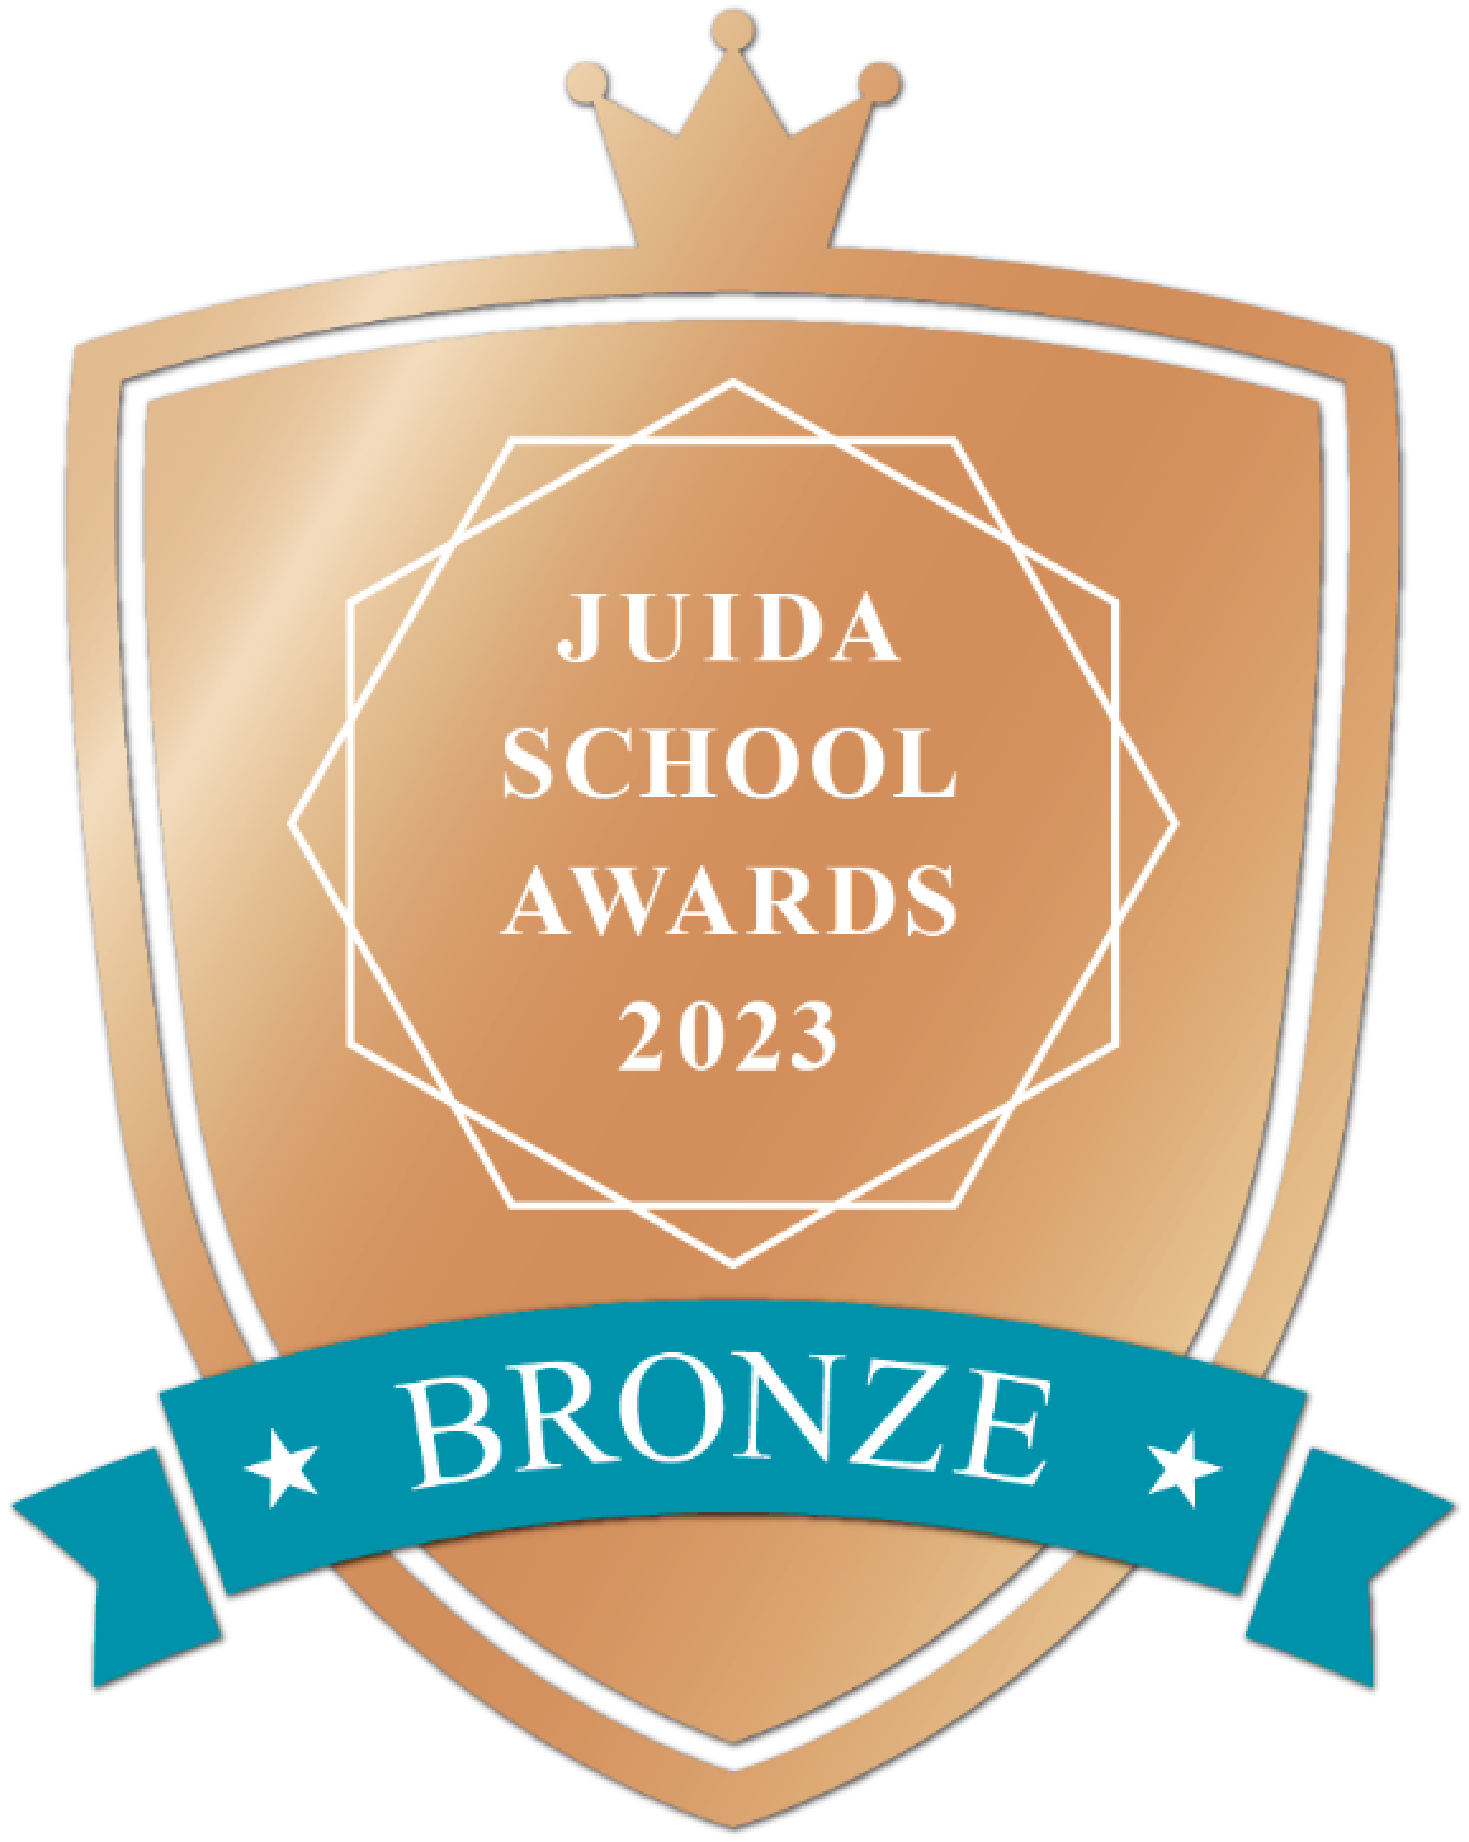 JUIDA SCHOOL AWARDS 2023 Bronze